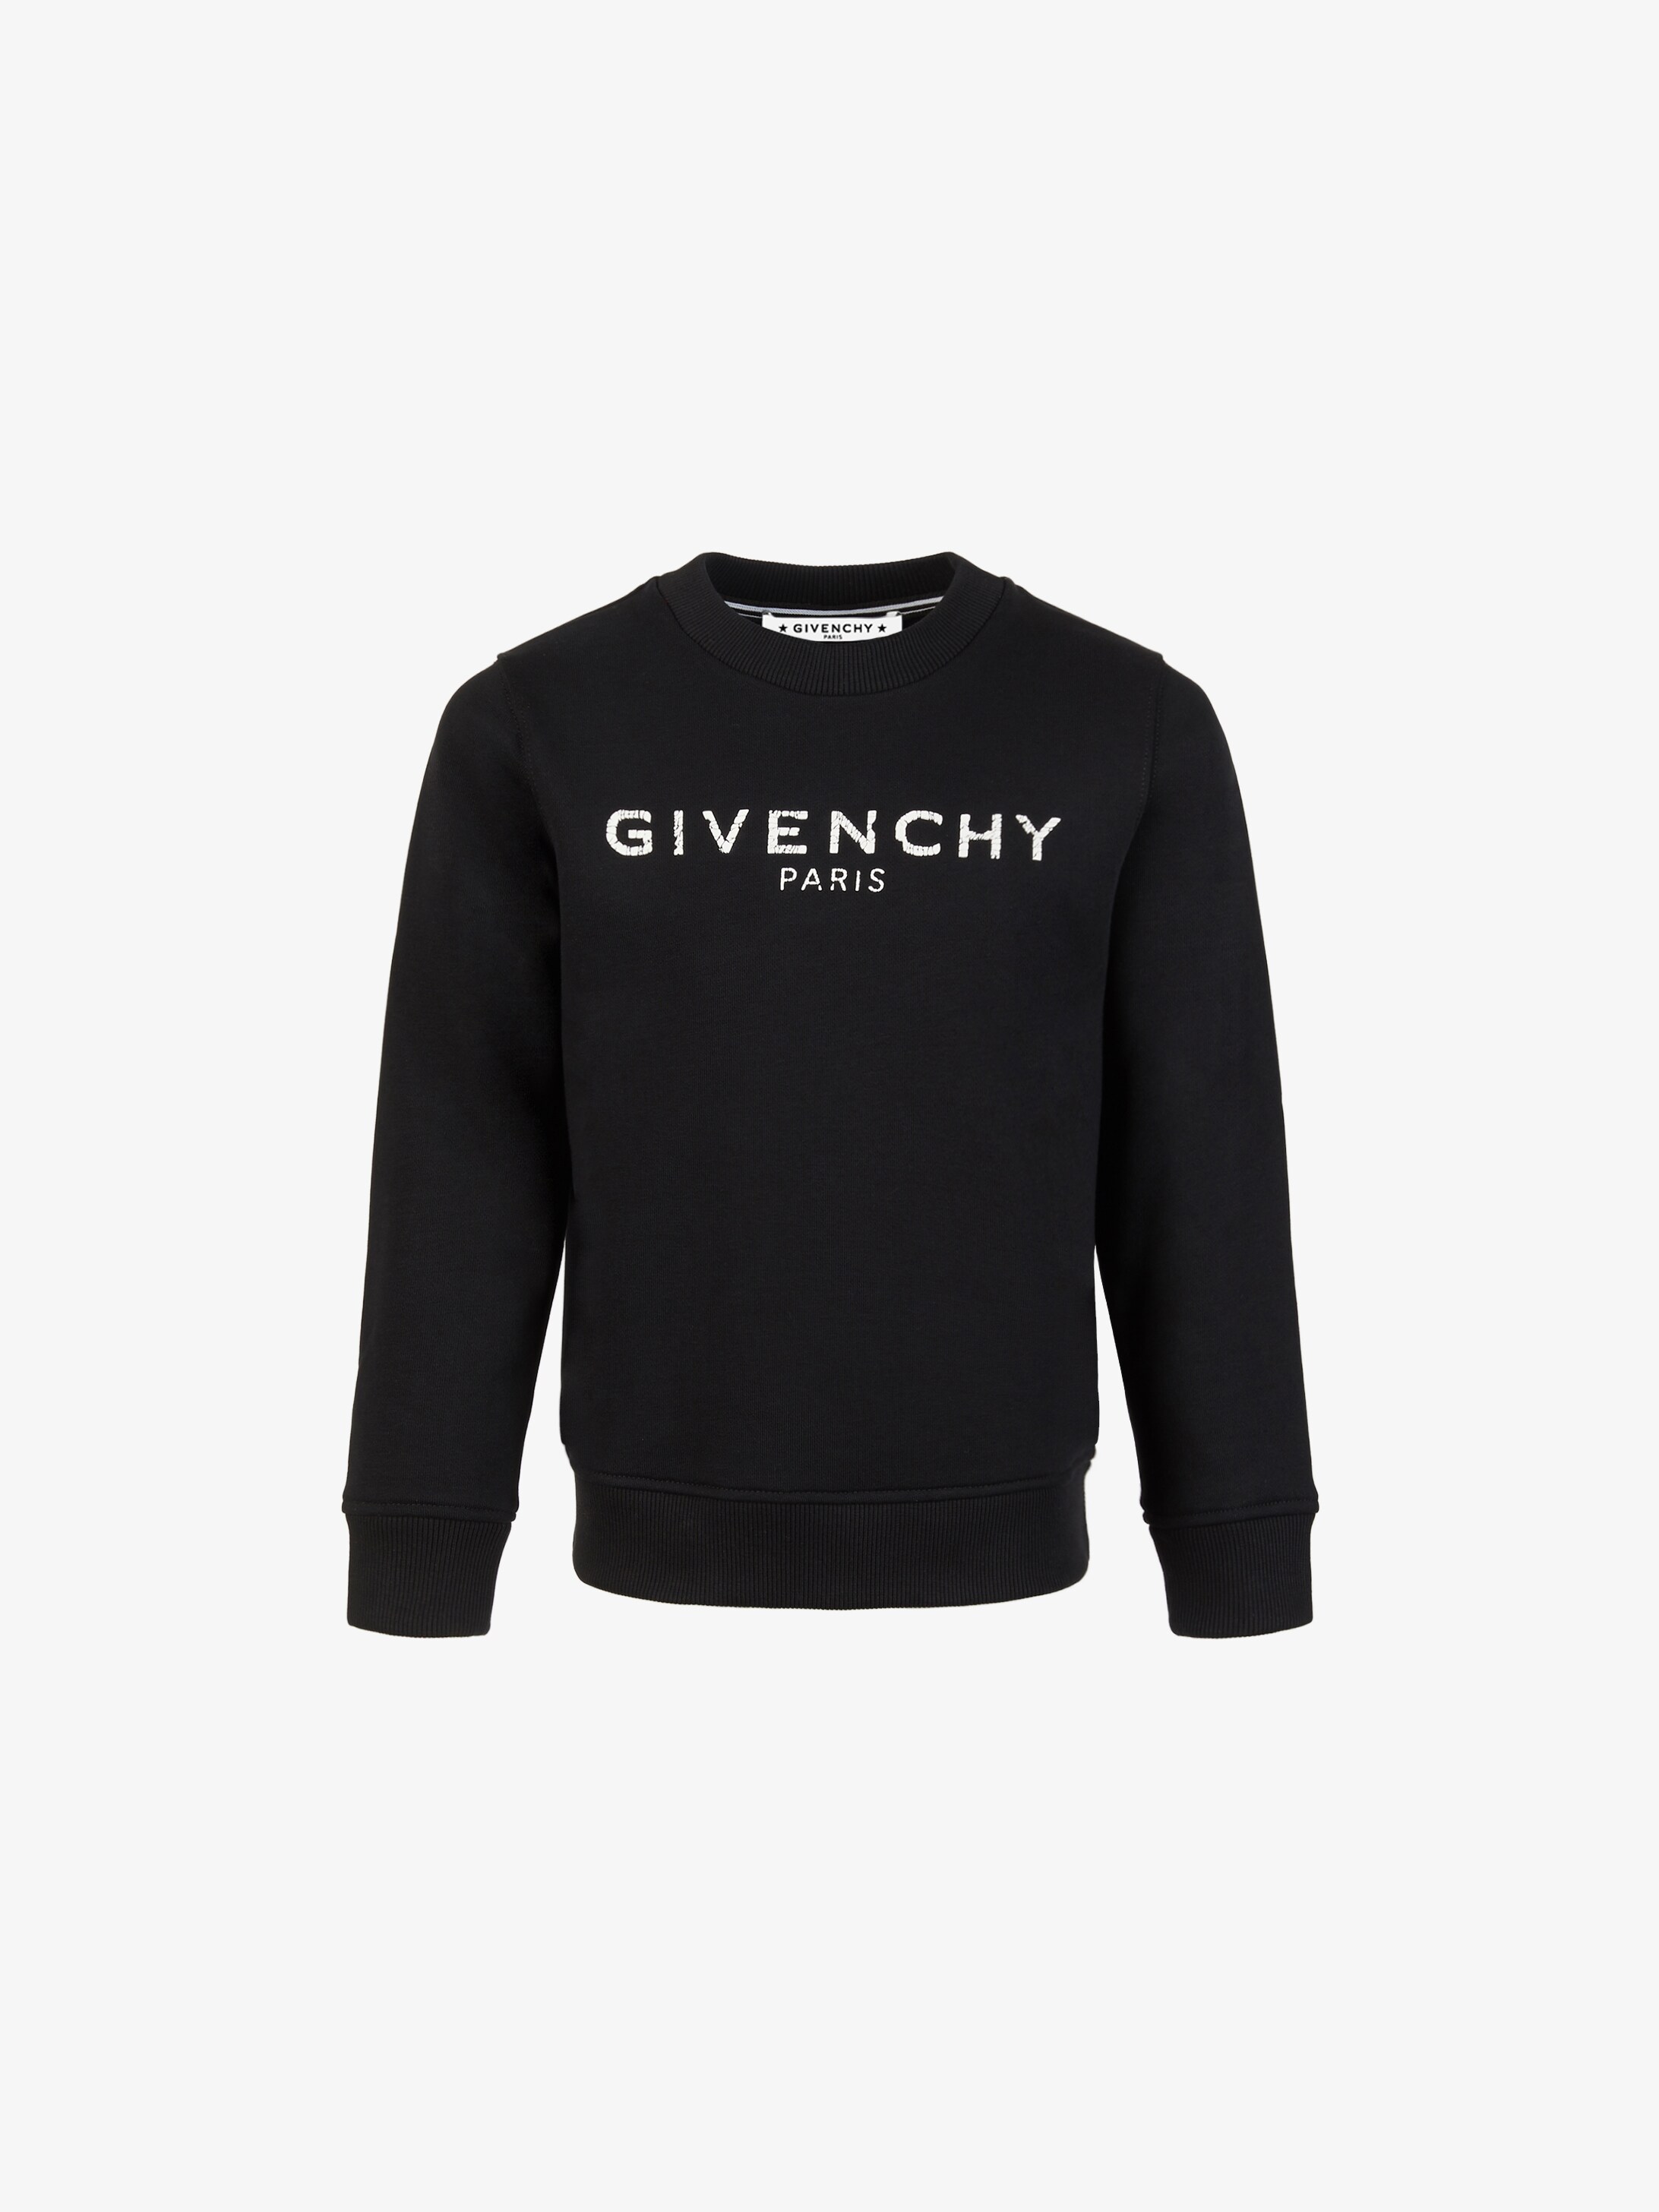 GIVENCHY PARIS vintage sweatshirt | GIVENCHY Paris